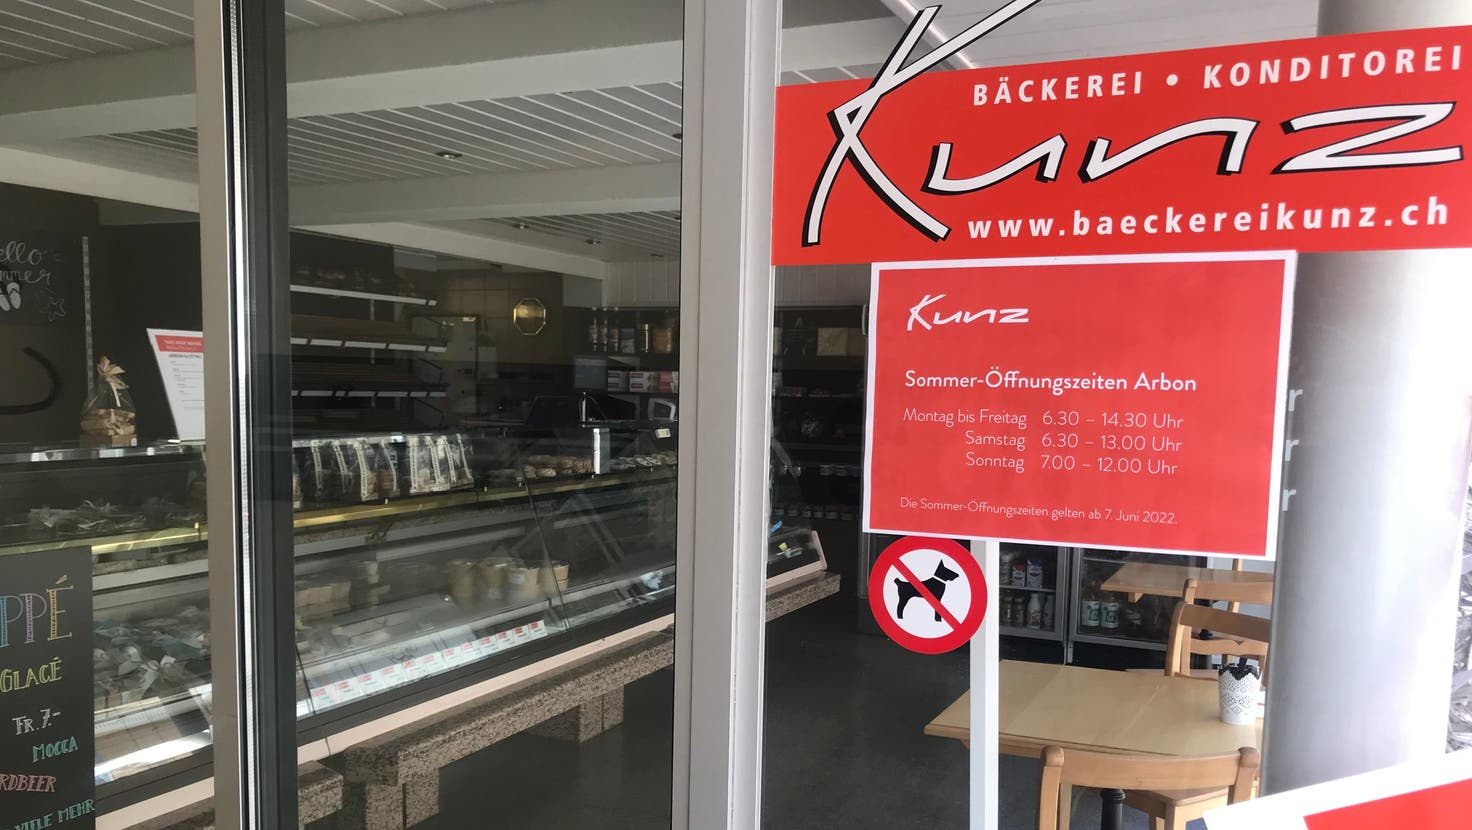 Kurz vor drei ist die Bäckerei Kunz bereits geschlossen, was viele schade finden. (Tanja von Arx)